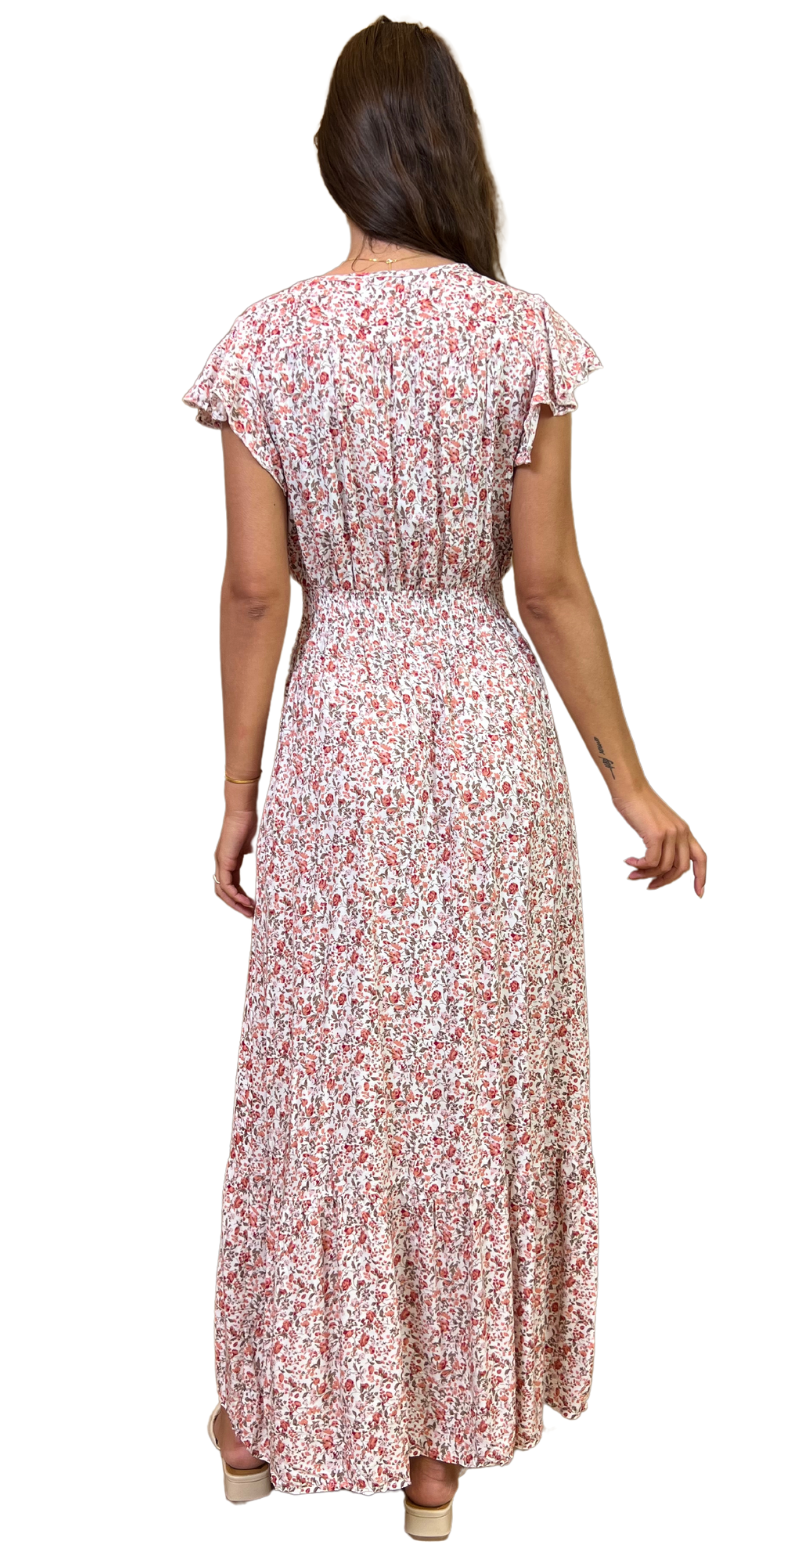 Lang kjole med rosenprint og v-hals hvid og rosa bagfra